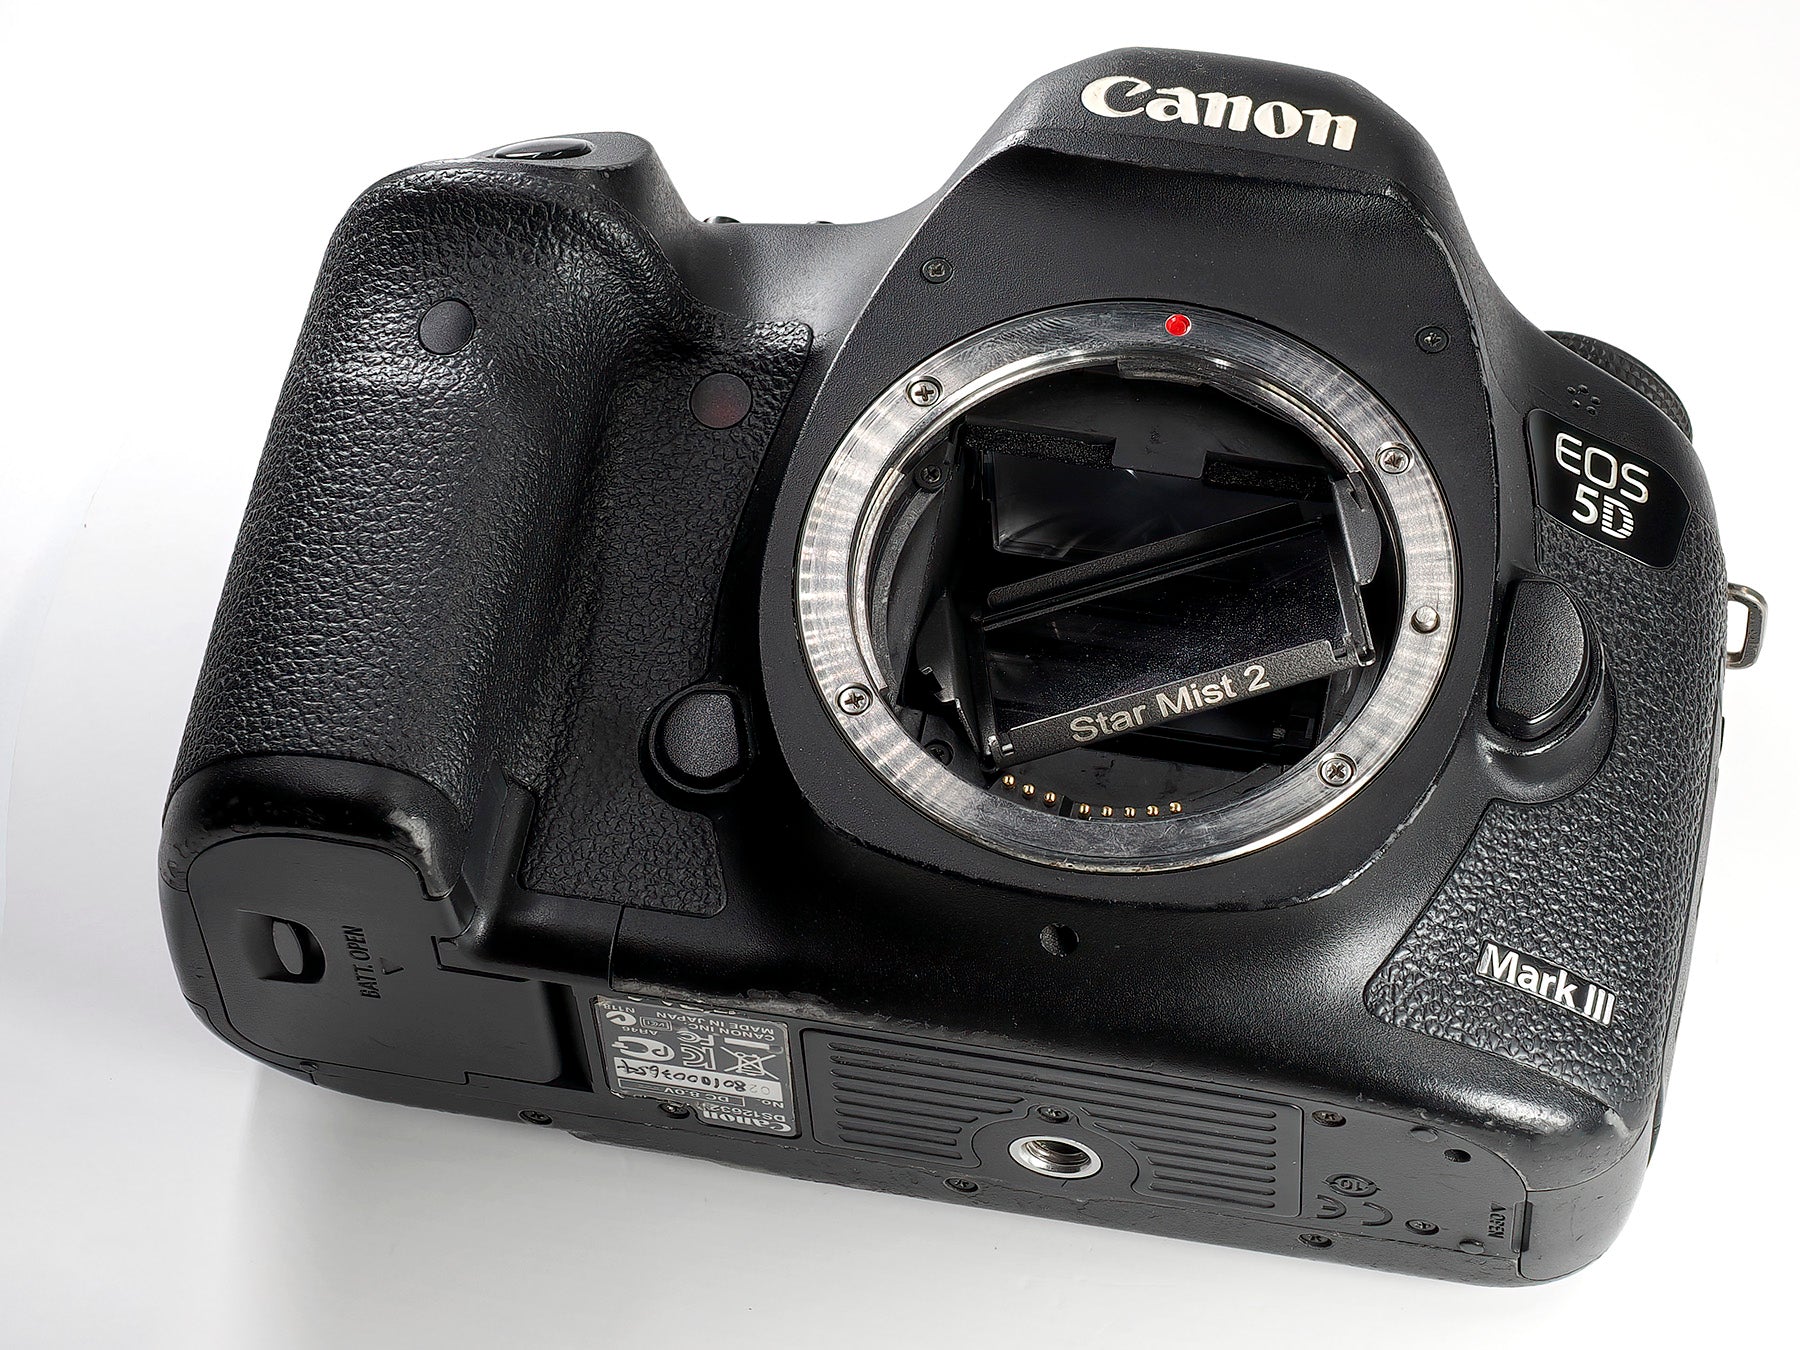 Star Mist Cilp Filter for Canon Full-Frame